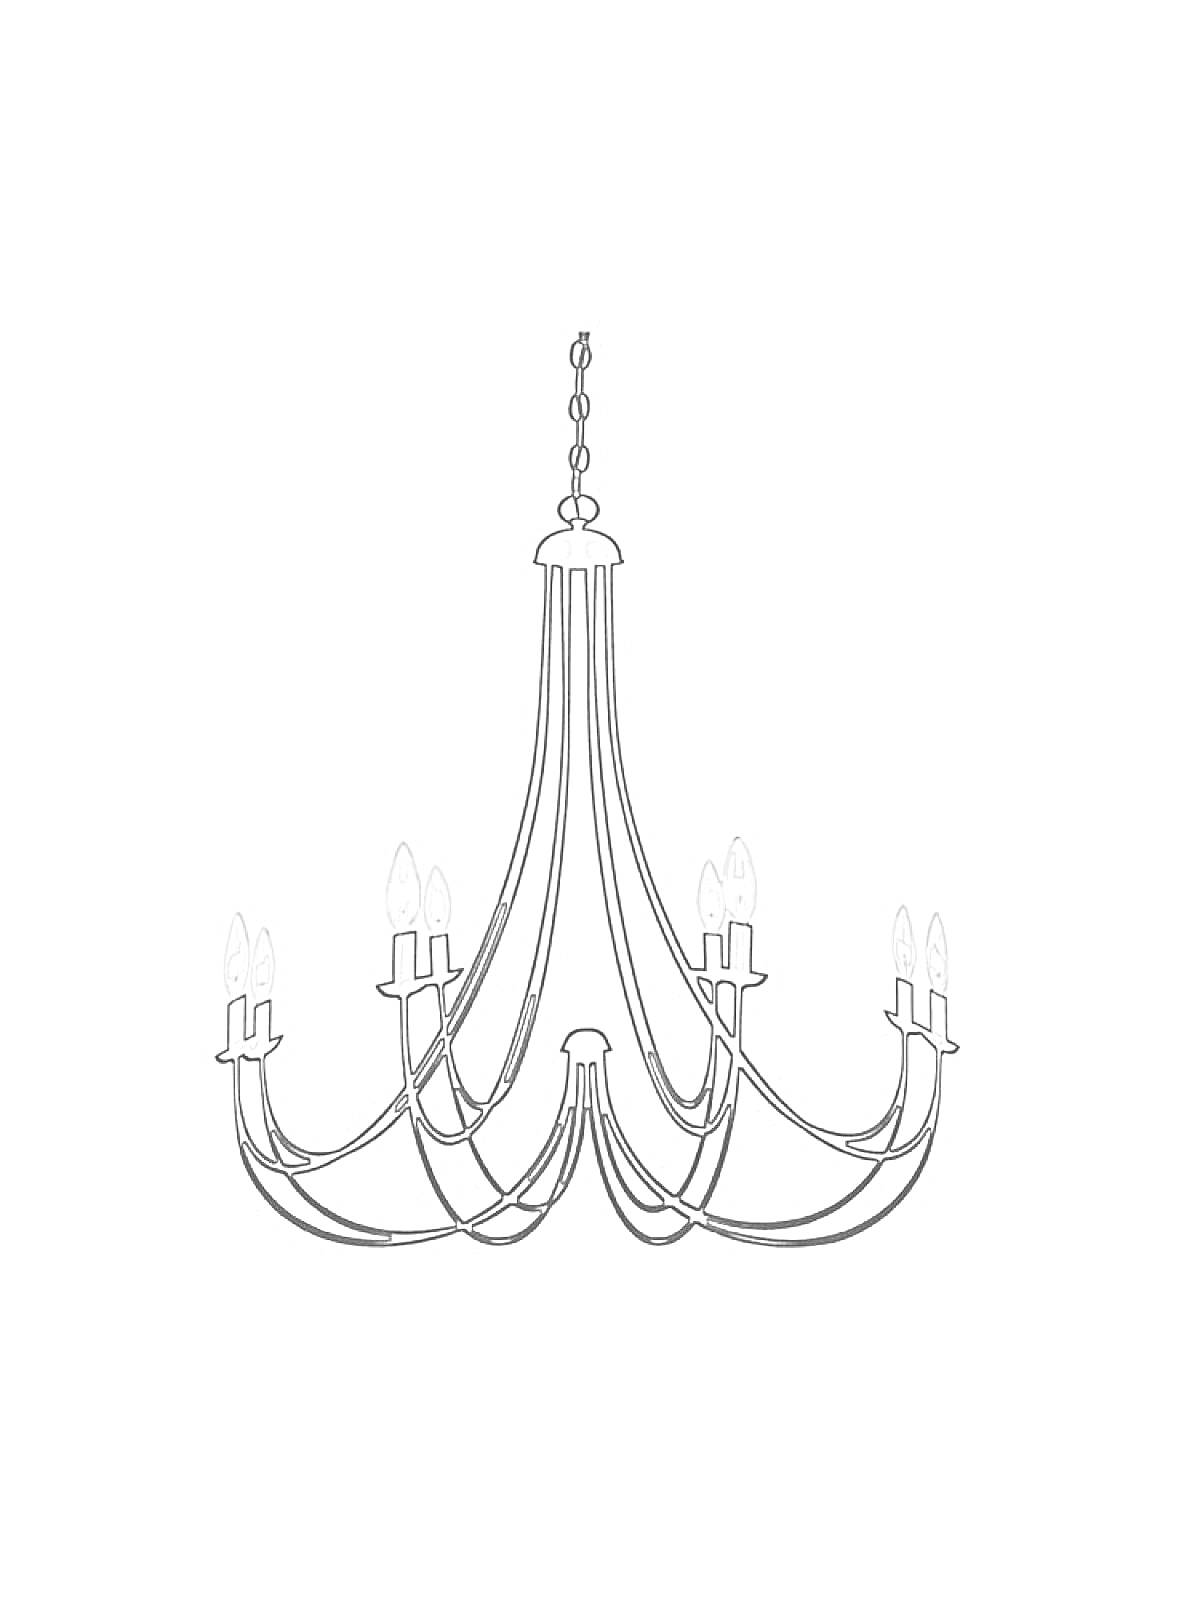 Люстра с восьмью лампами на восьми изогнутых держателях, соединённых цепью на верхушке